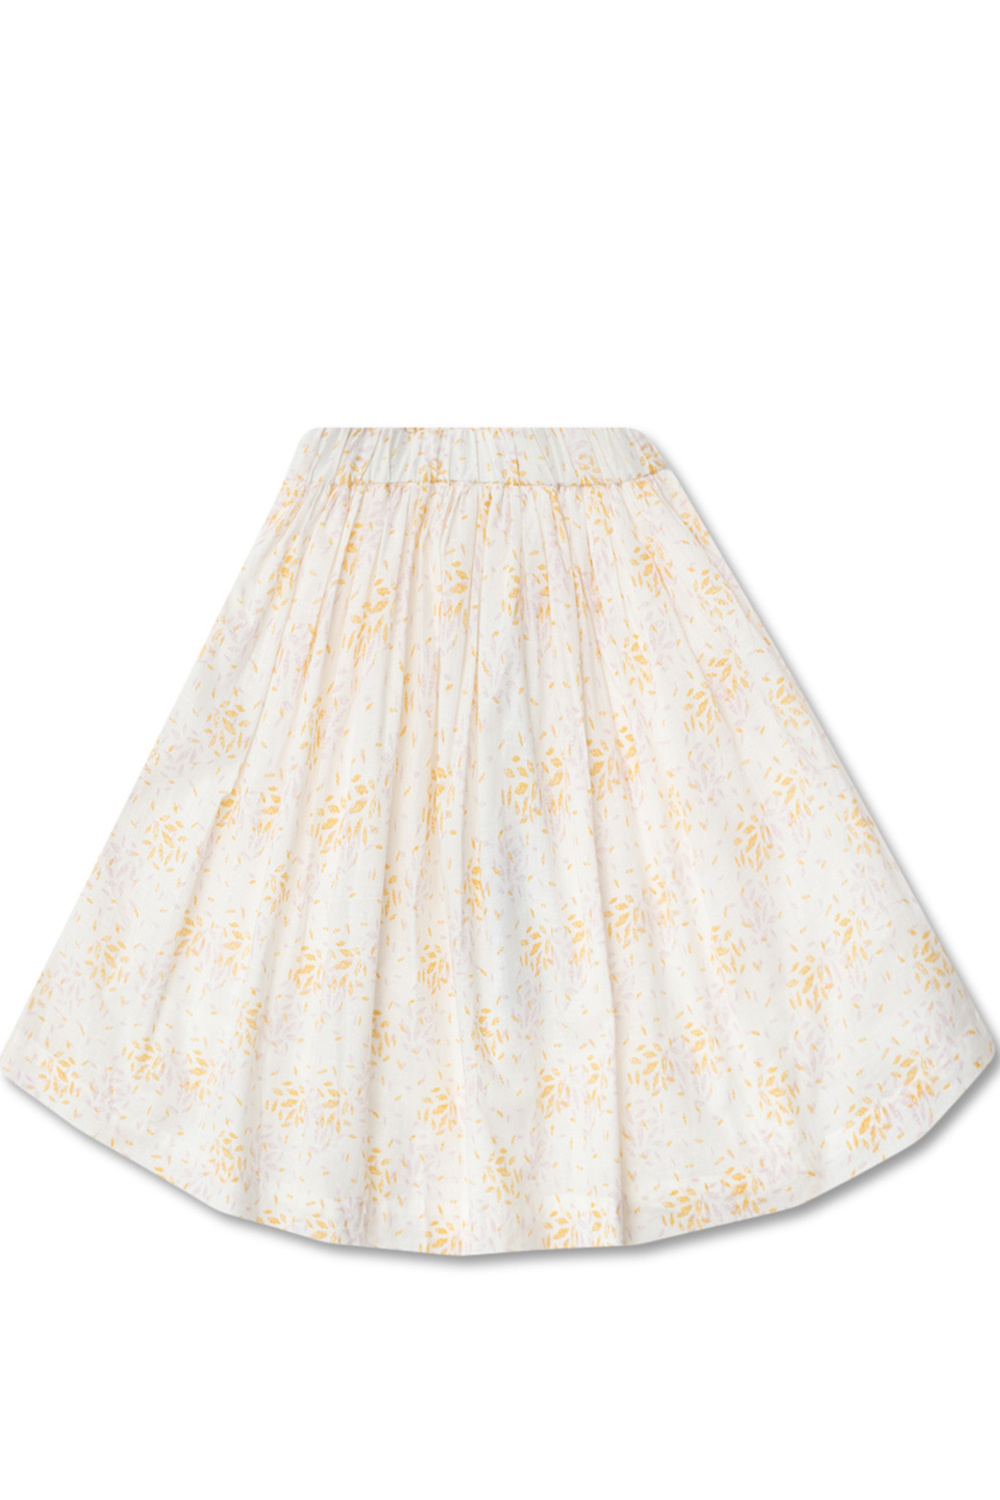 Bonpoint  Printed skirt